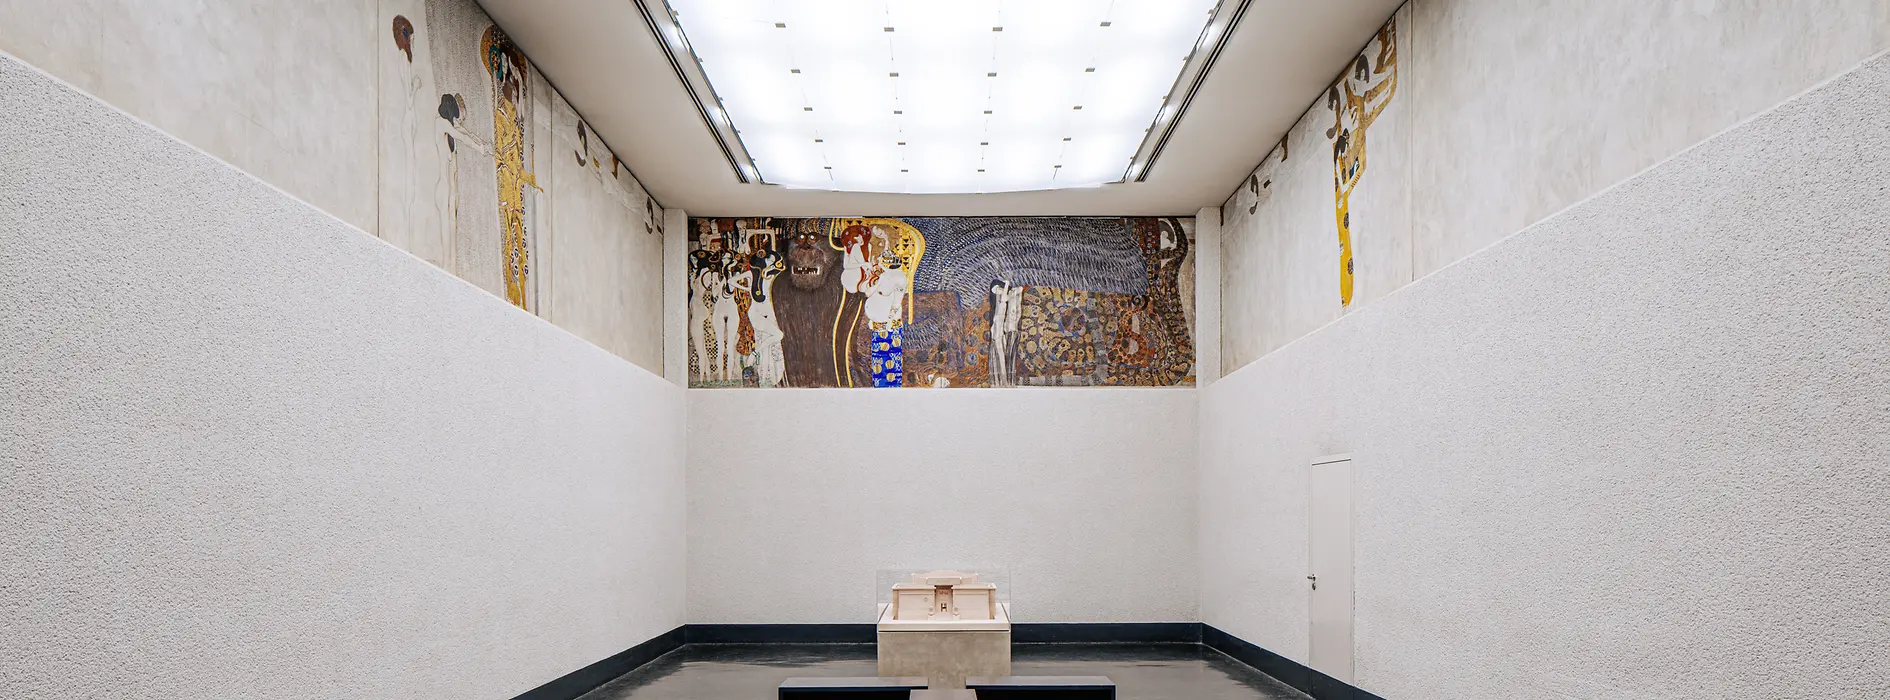 Beethovenfries von Gustav Klimt 